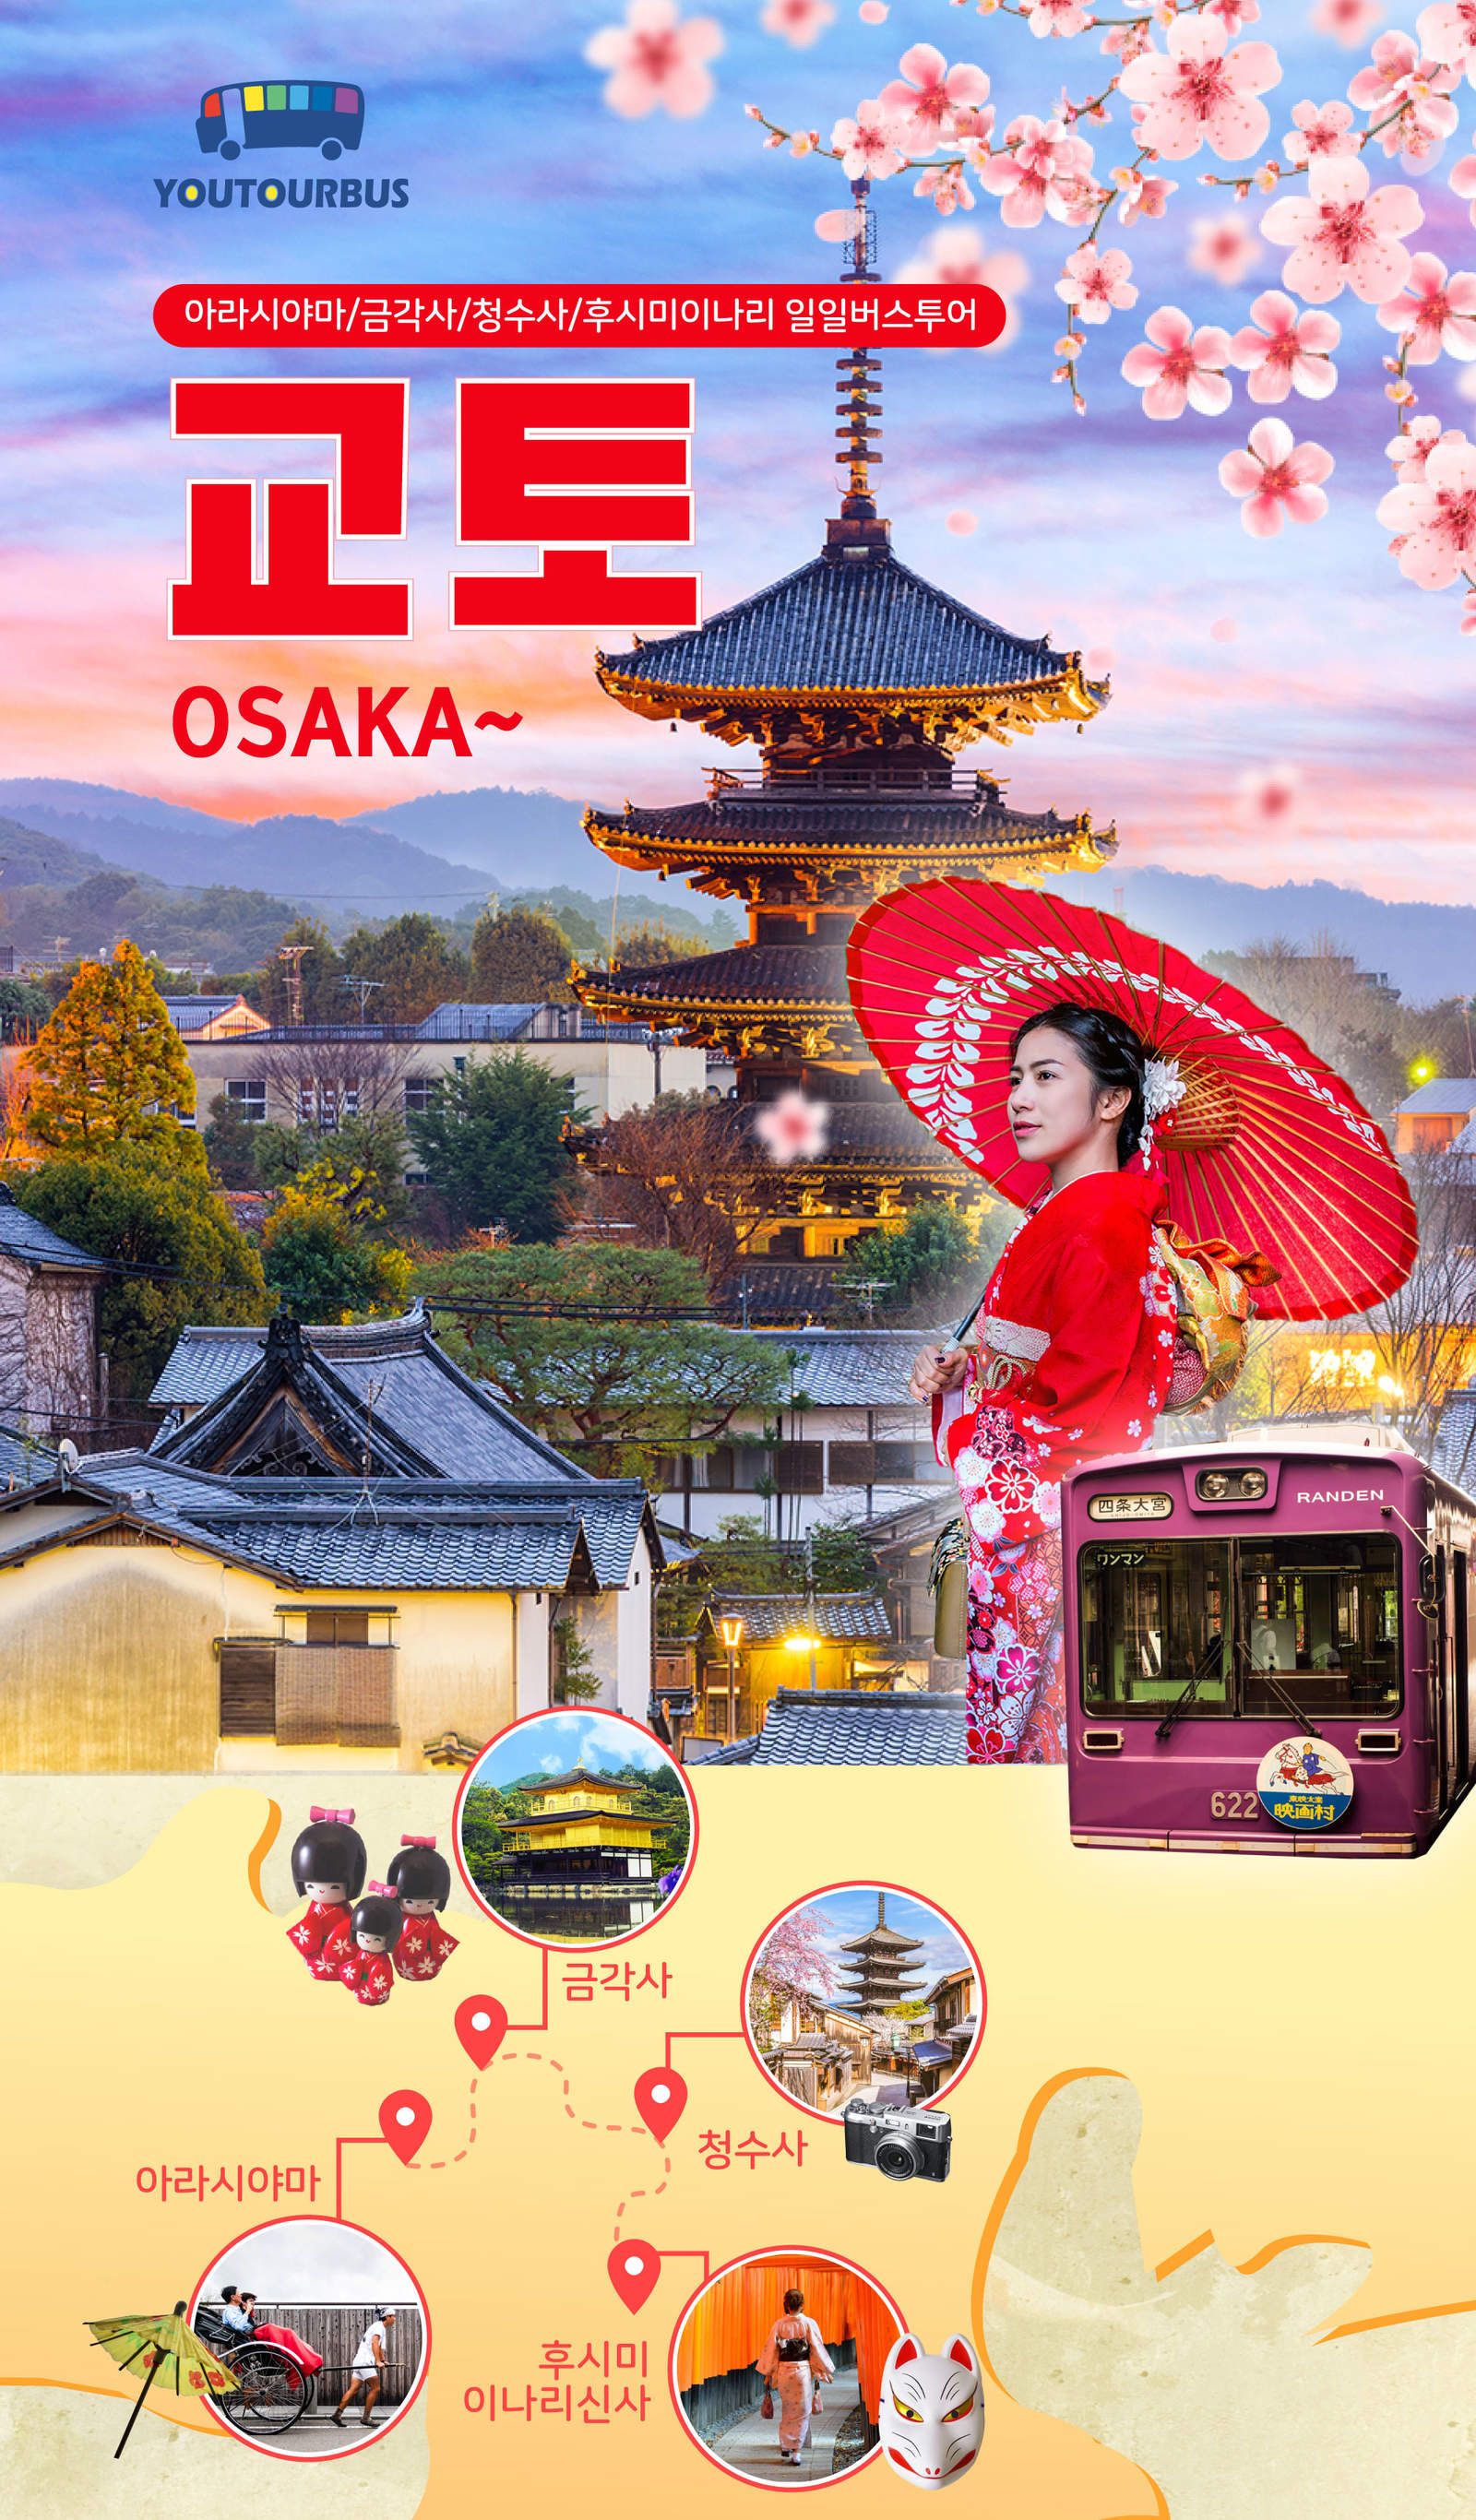 오사카 3박 4일 여행, 쇼핑, 볼거리와 간식, 맛집 투어